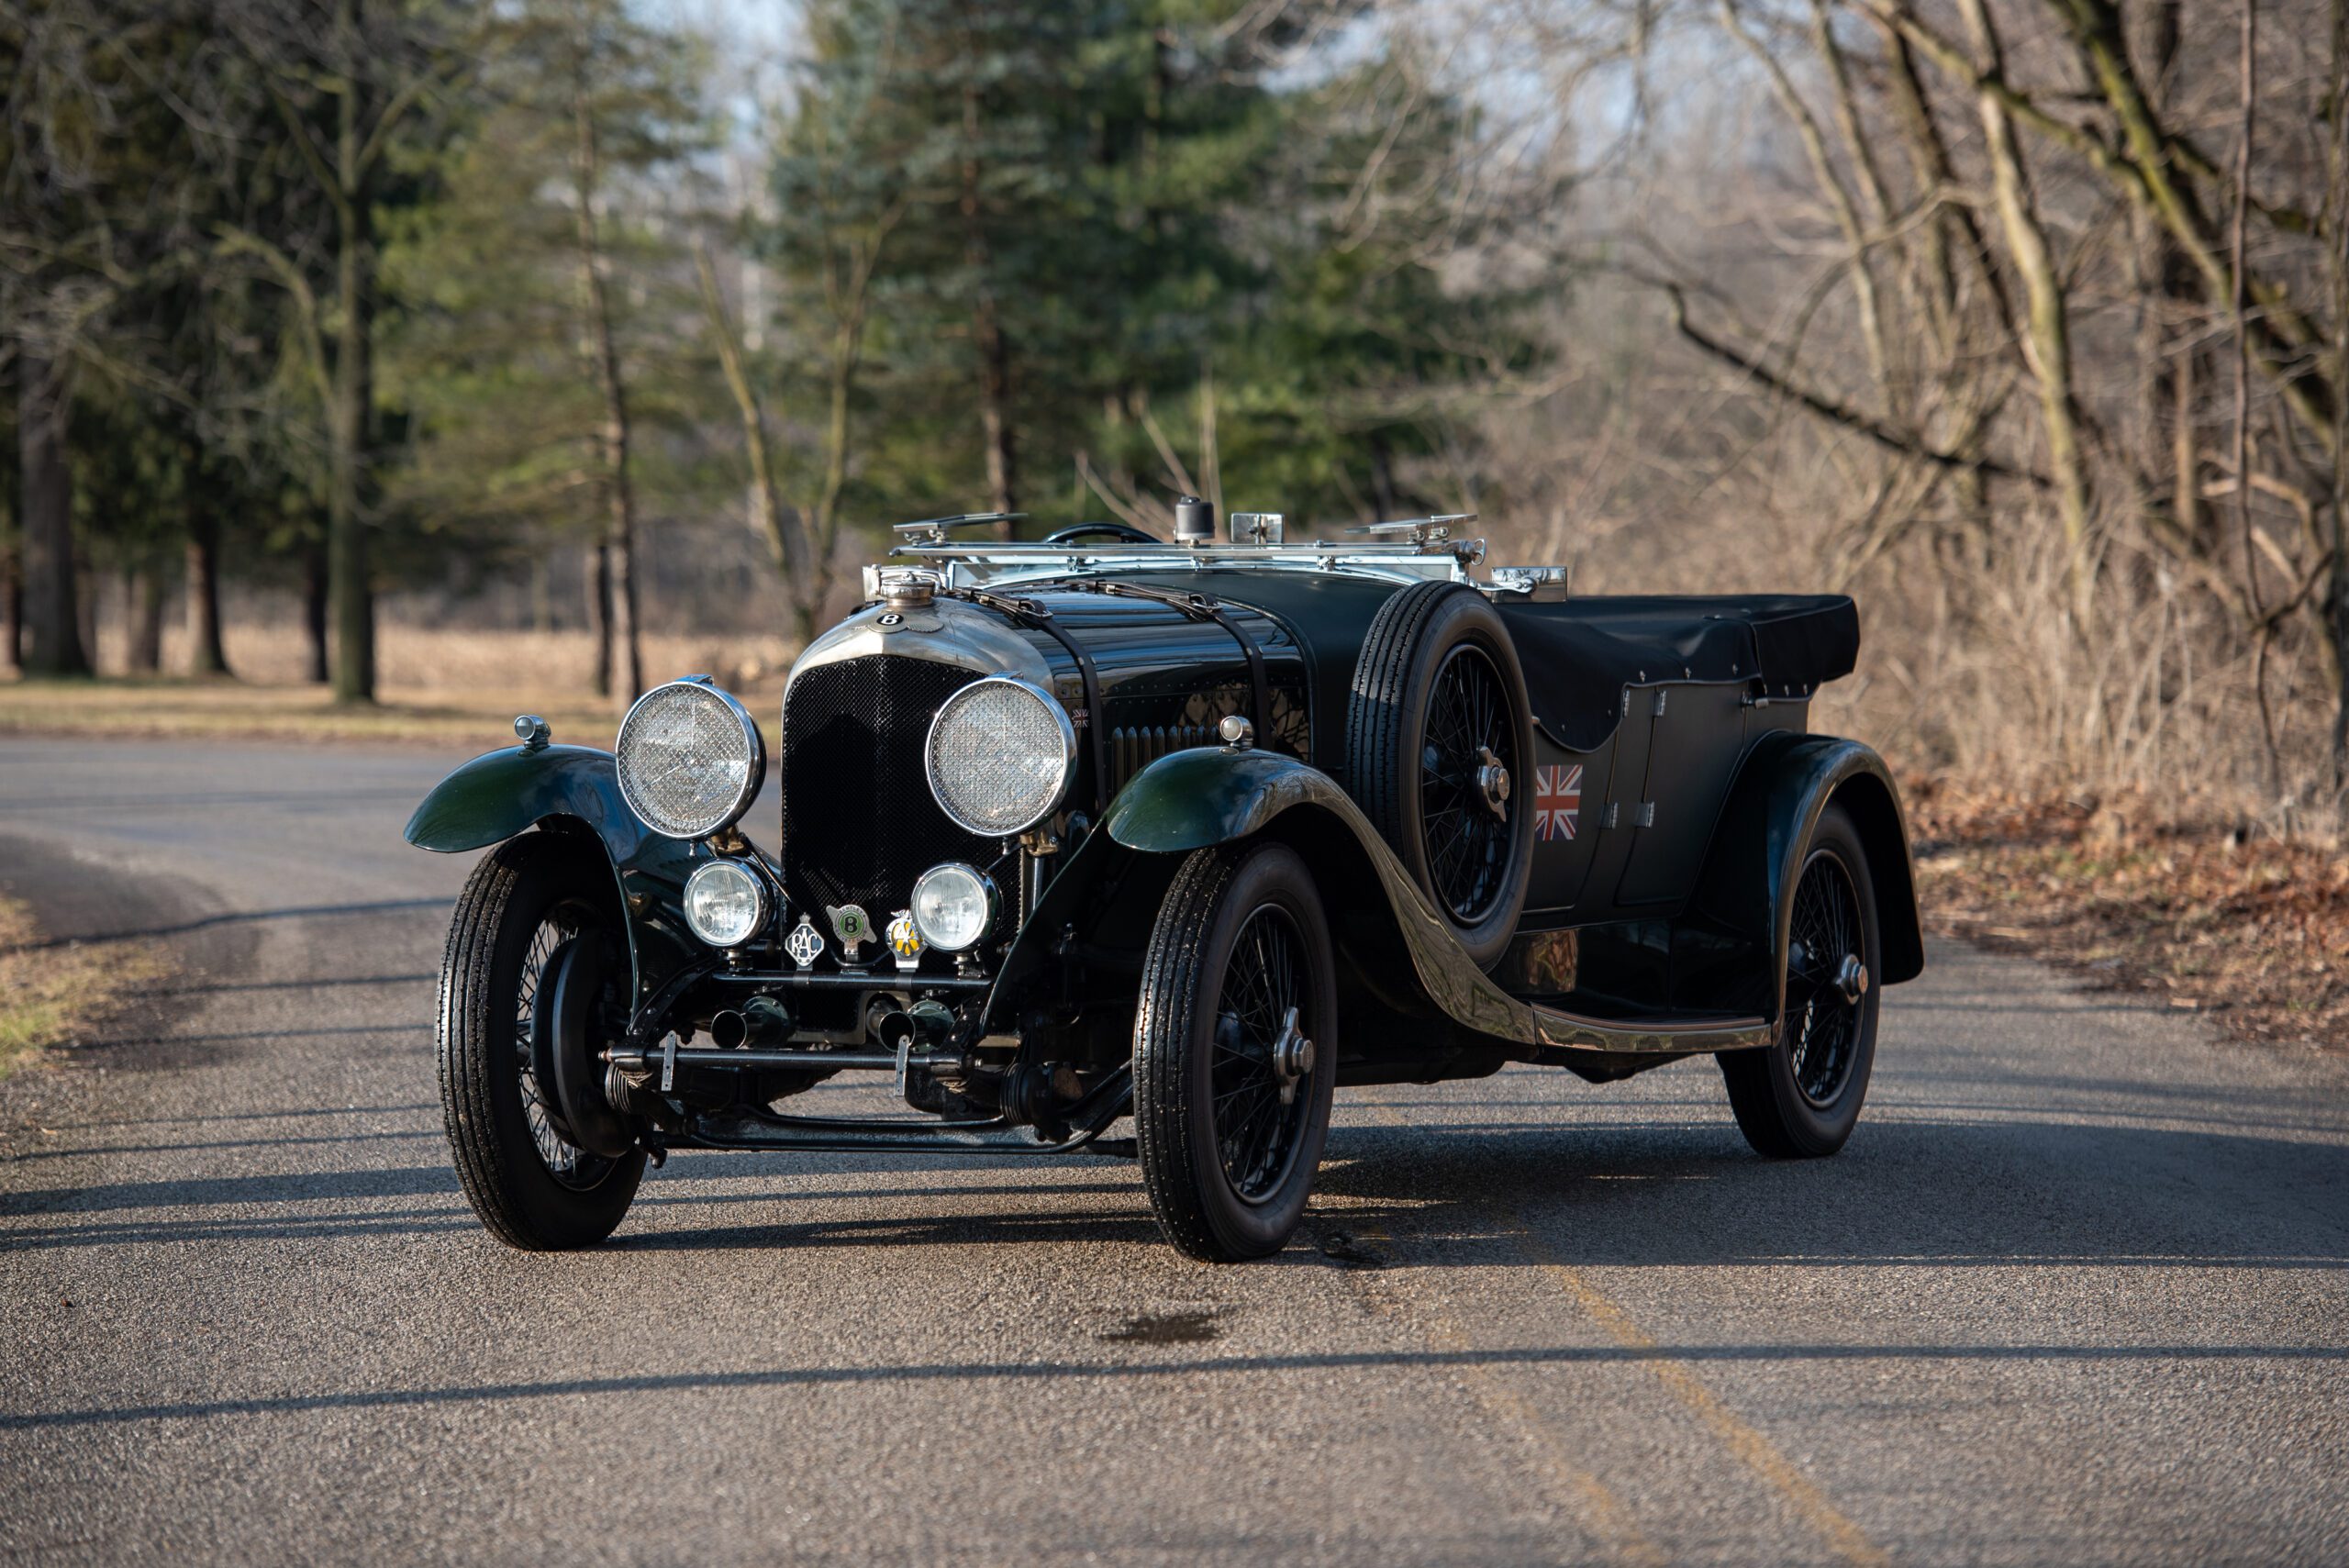 1929 Bentley 4½-Litre Tourer by Cadogan, 1929 Bentley 4½-Litre Tourer by Cadogan, Bentley, Bentley 4½-Litre